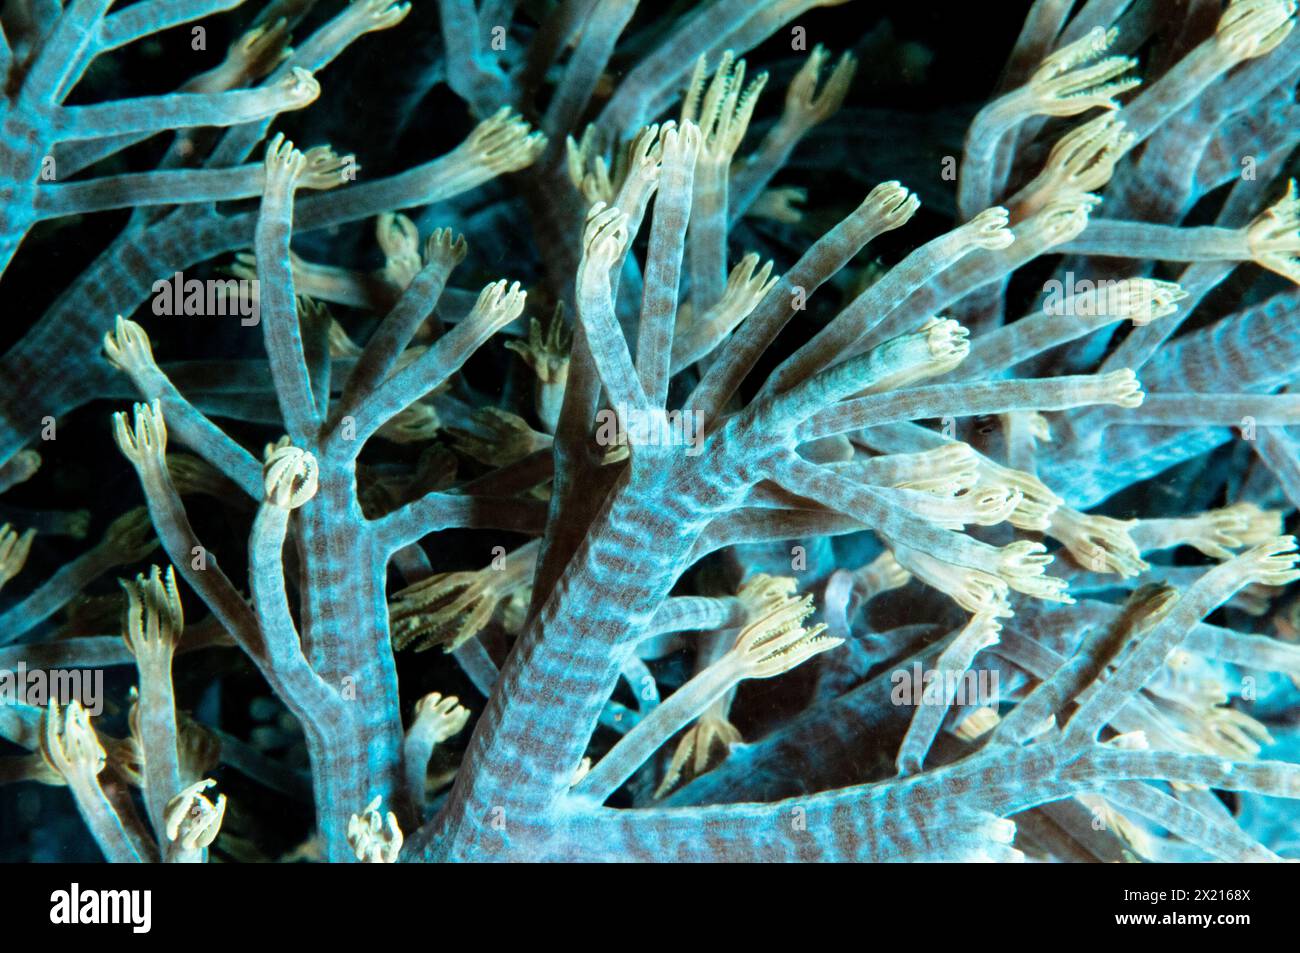 Xenia soft coral Stock Photo